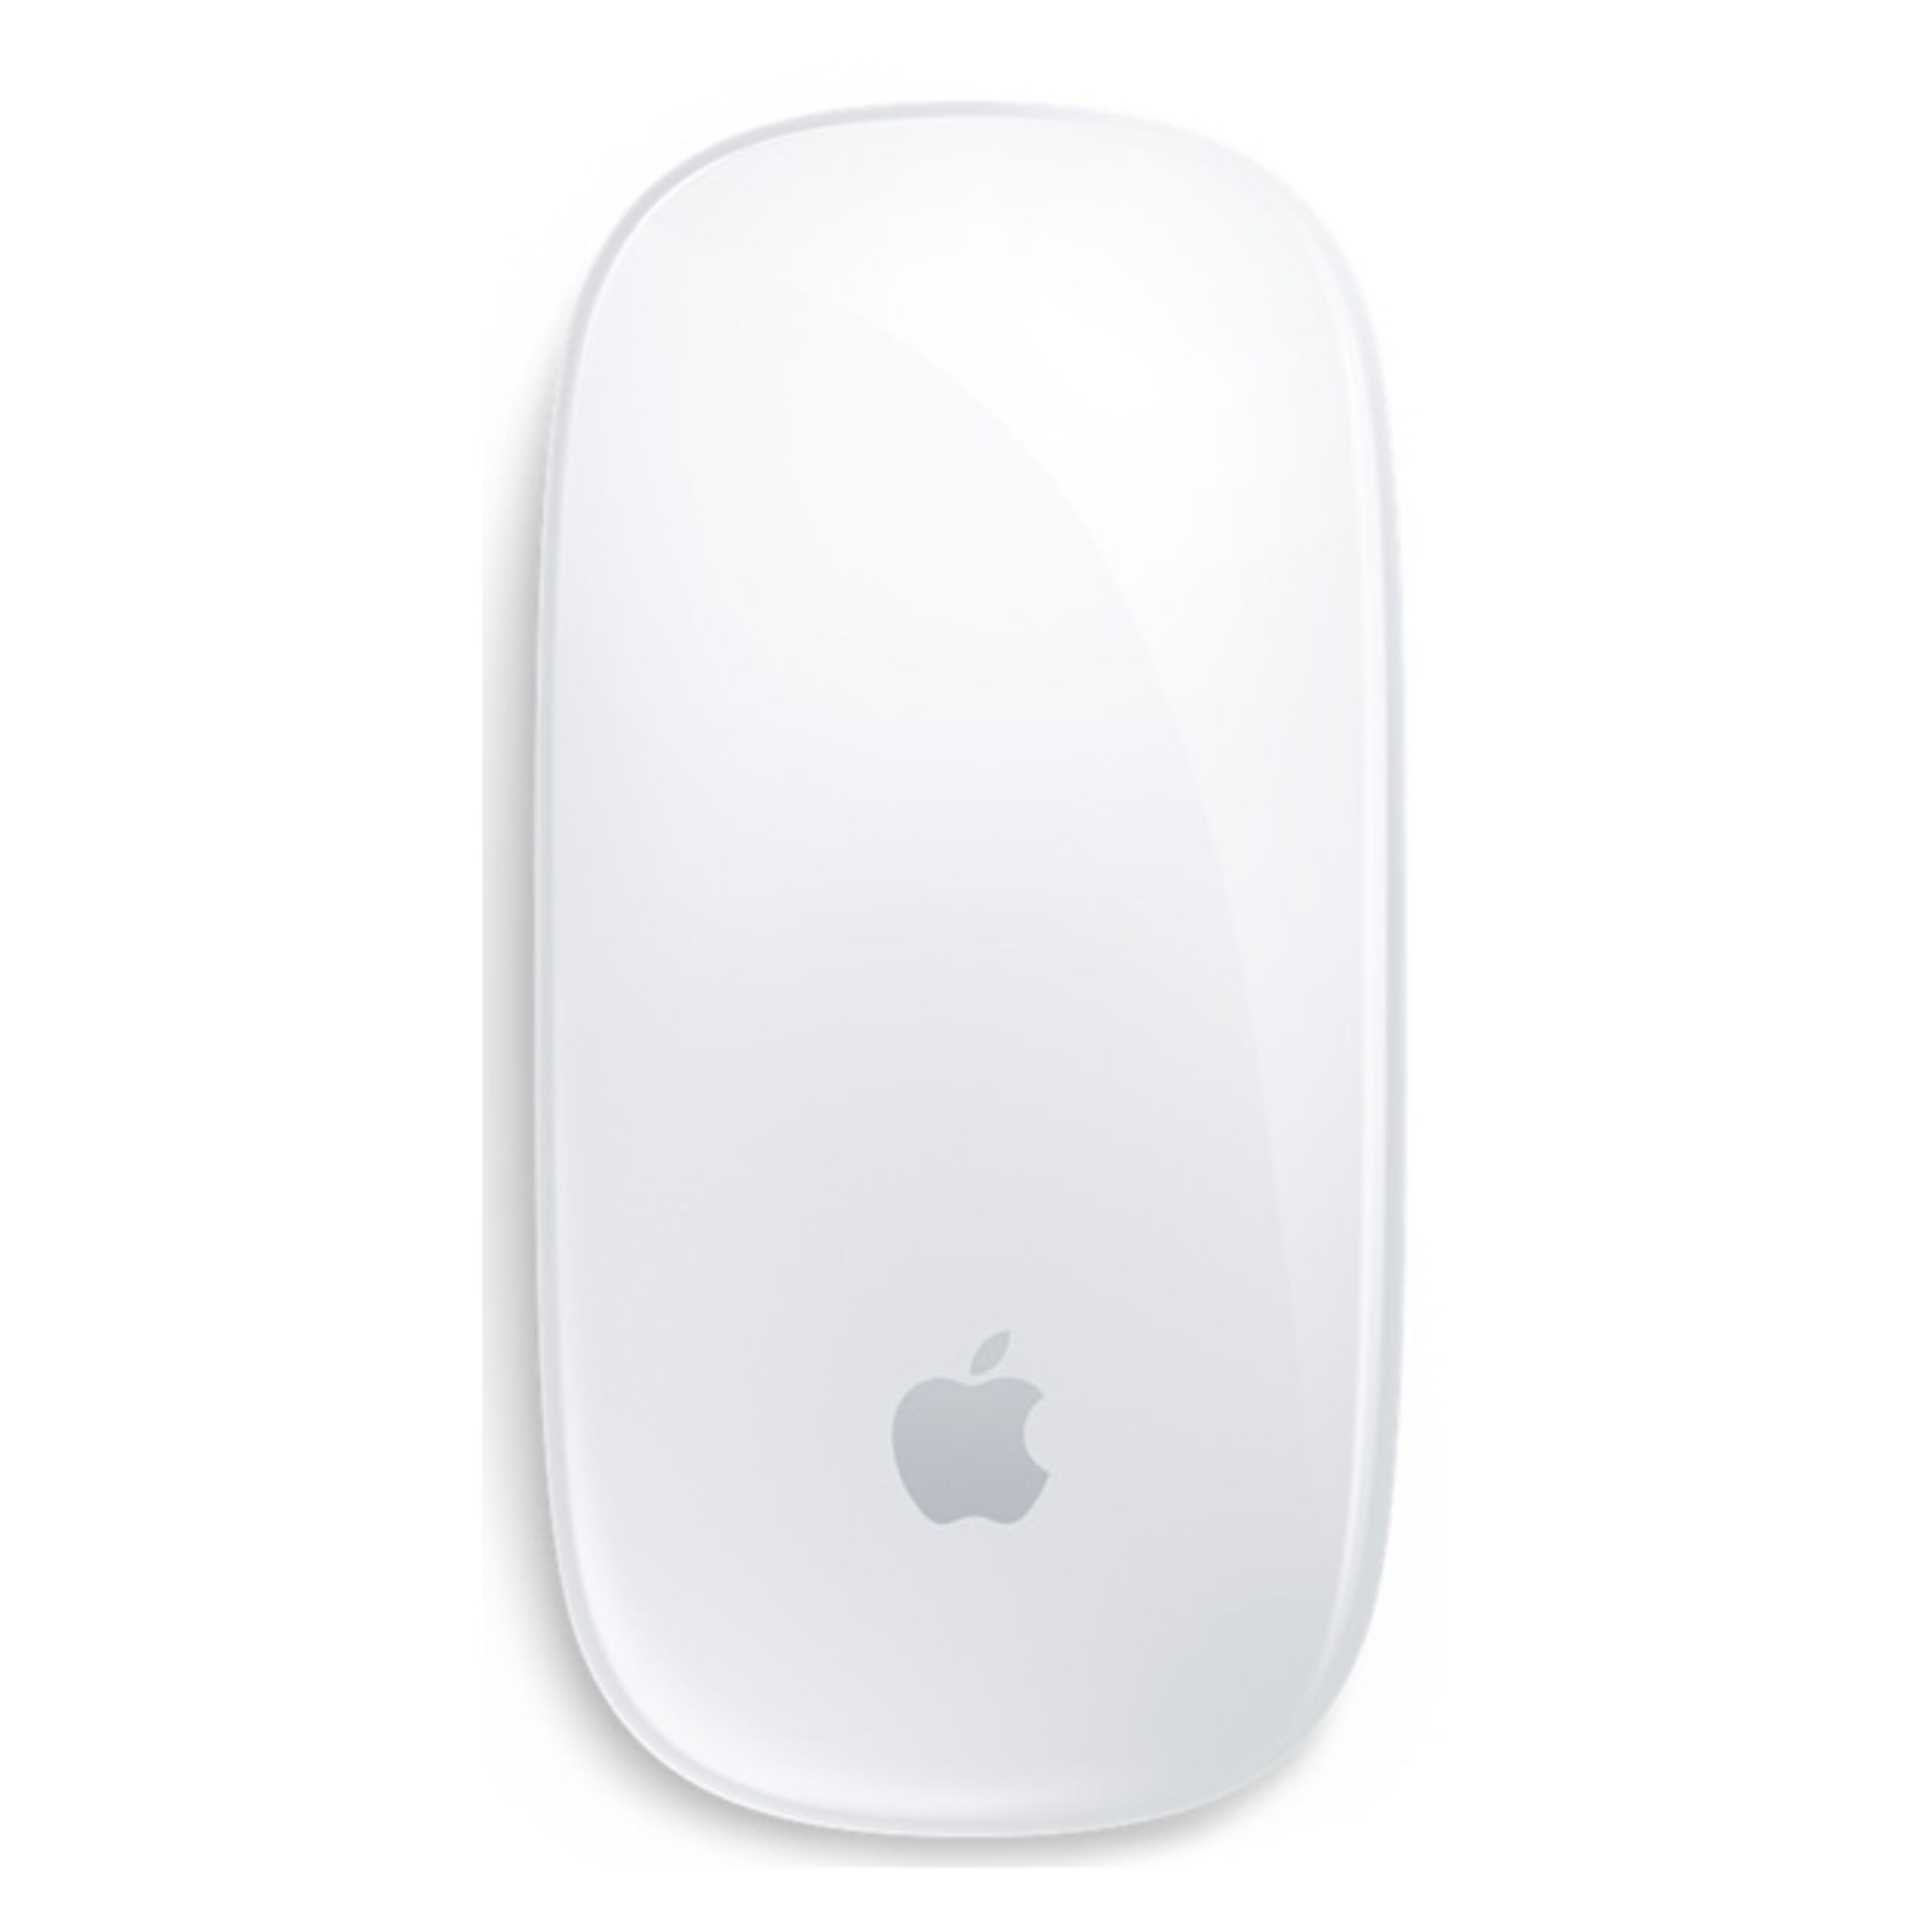 Apple Magic Trackpad (White) MK2D3AM/A B&H Photo Video